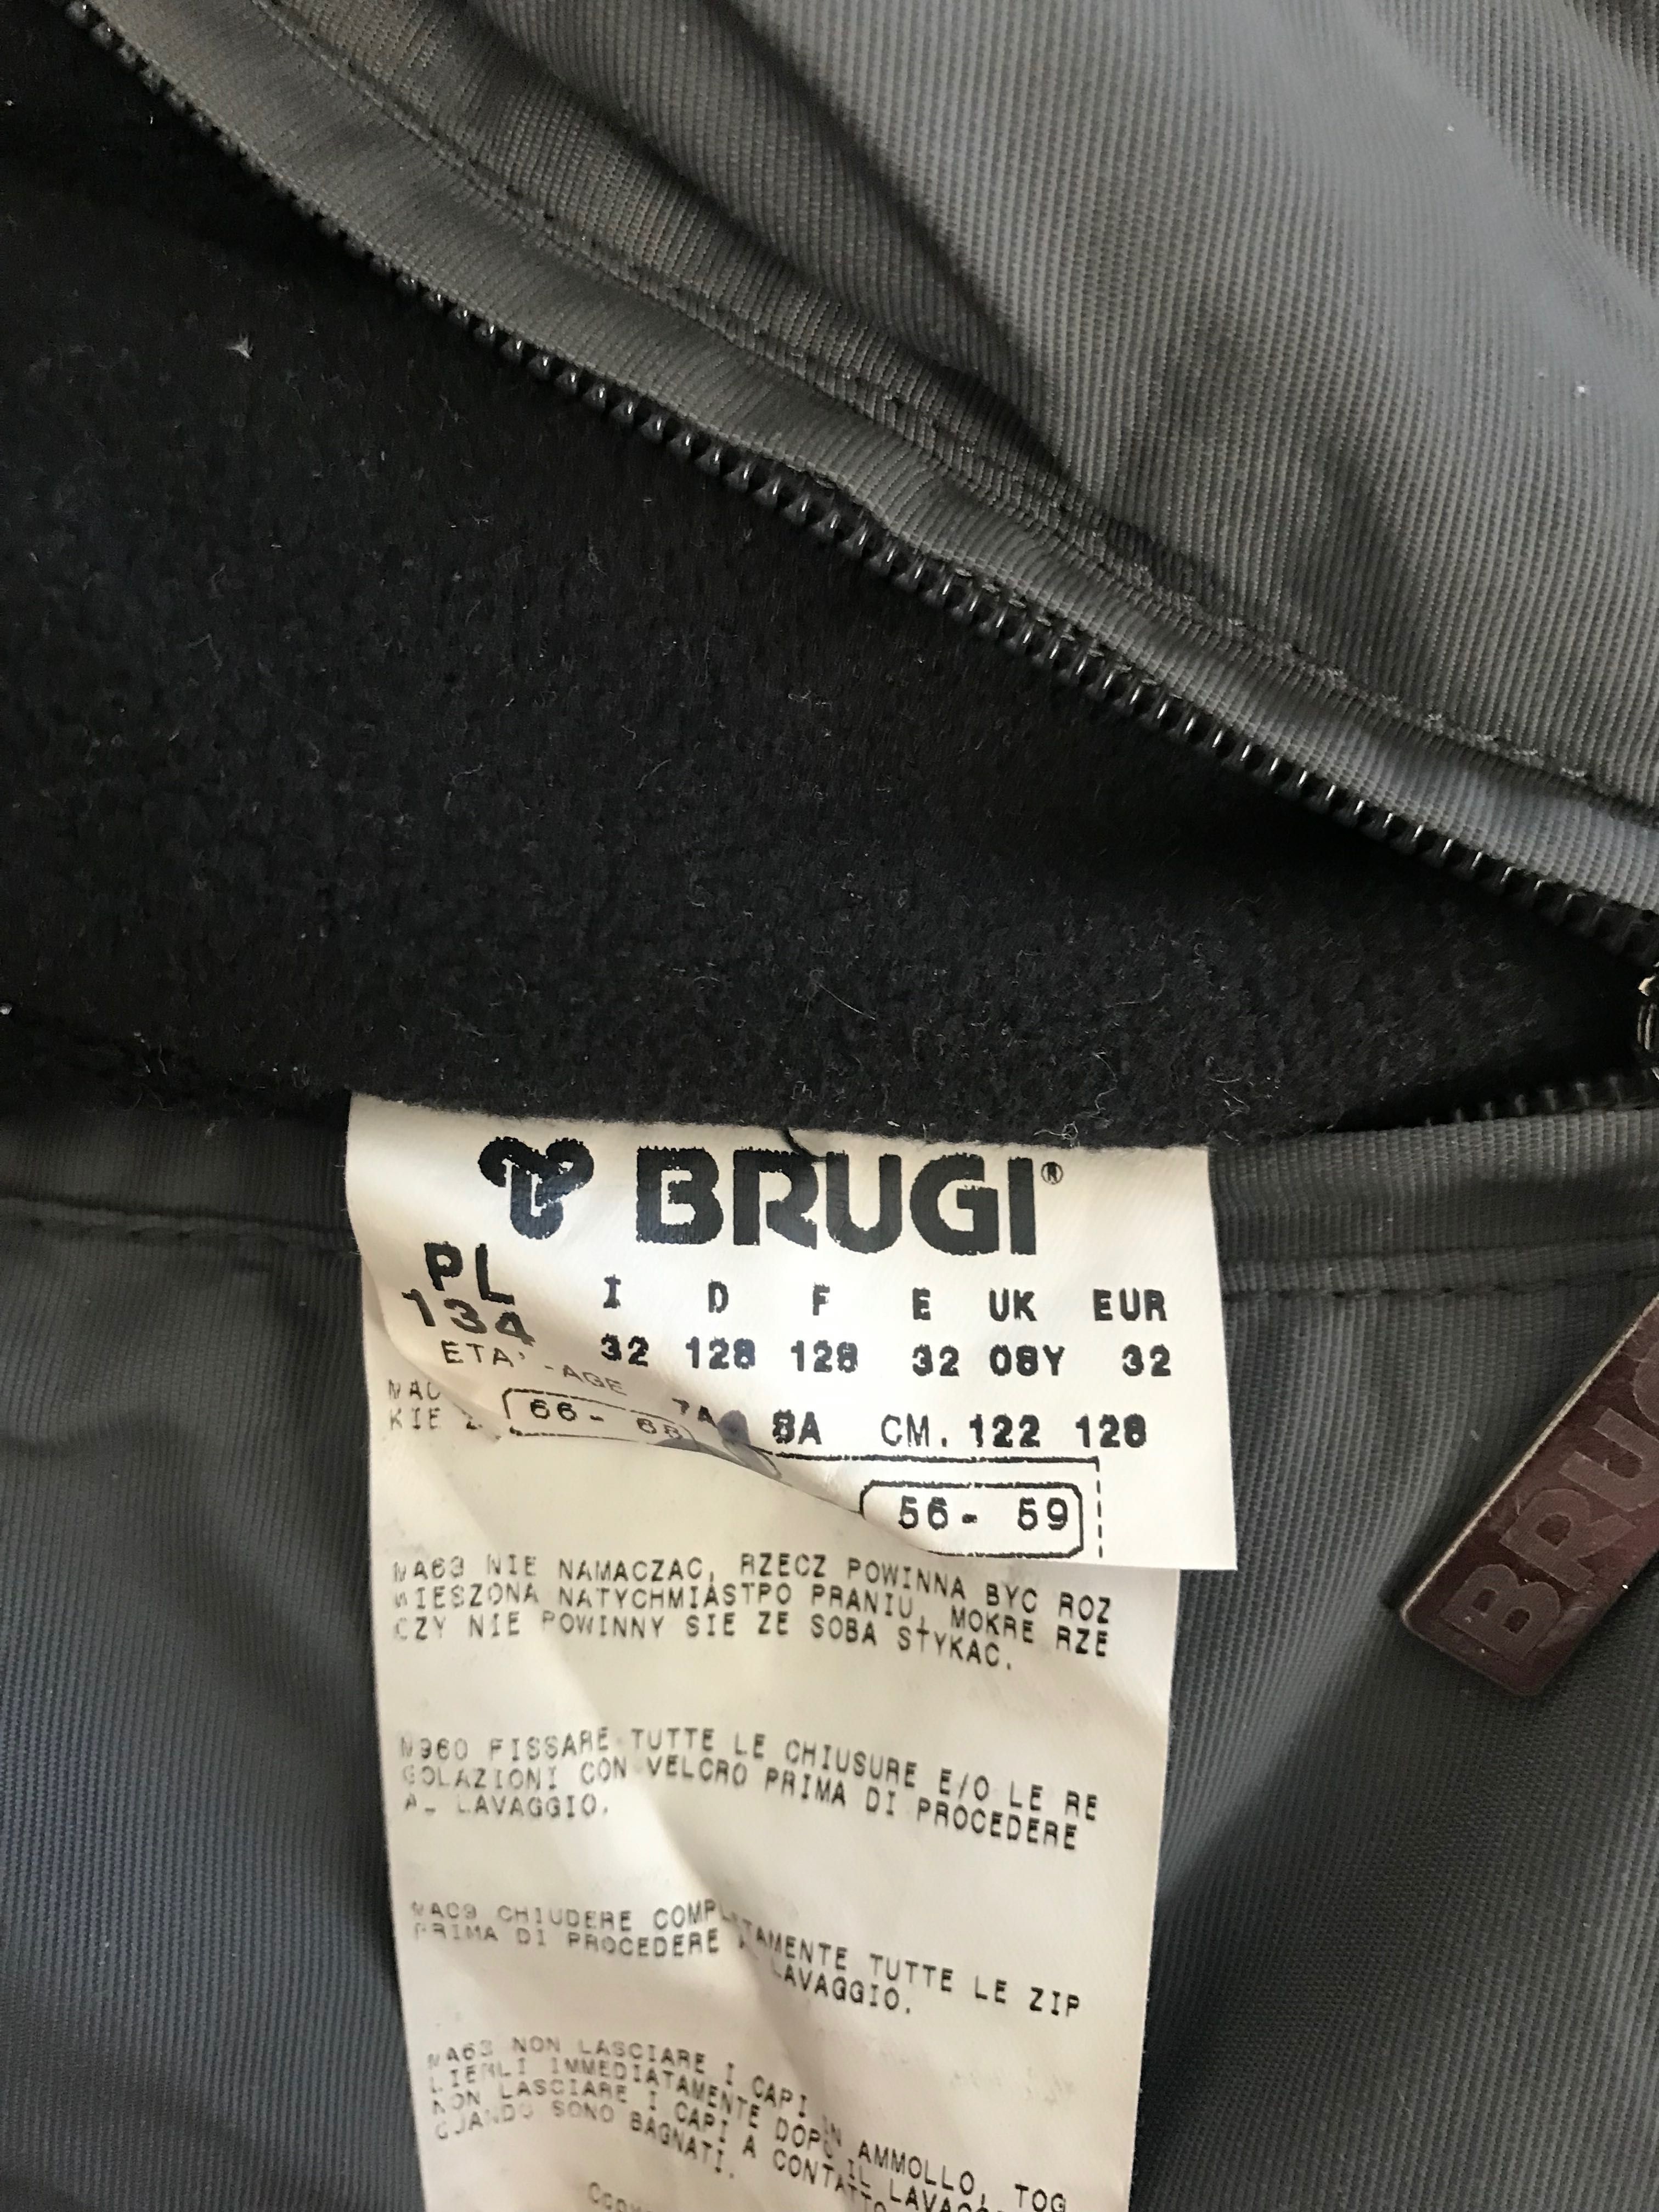 Kurtka ze spodniami firmy Brugi